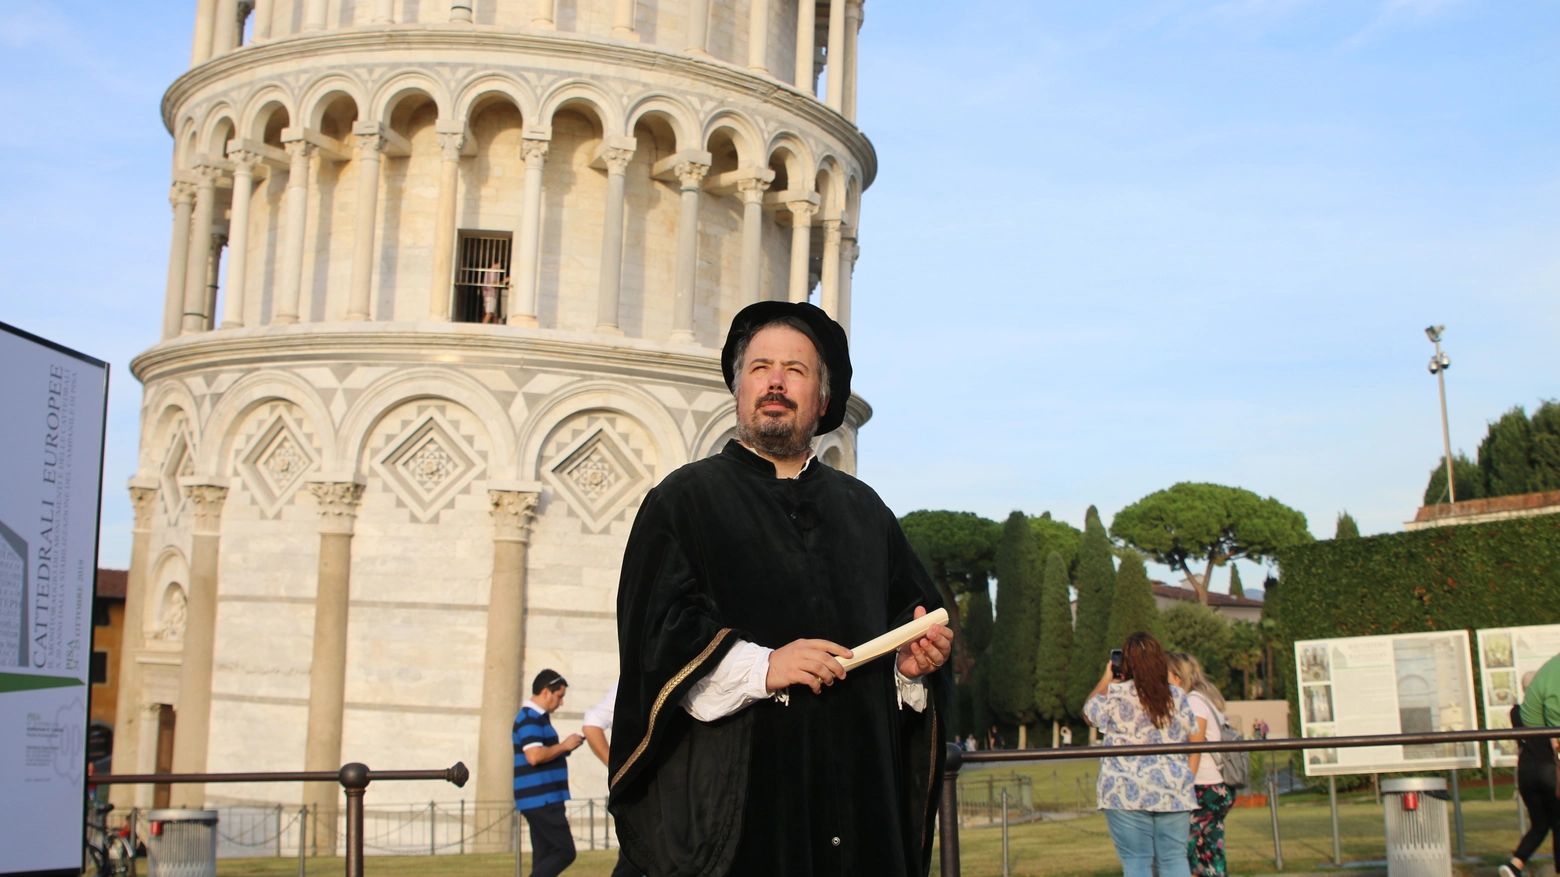 Un figurante nei panni di Galileo e la Torre: i simboli tradizionali di Pisa